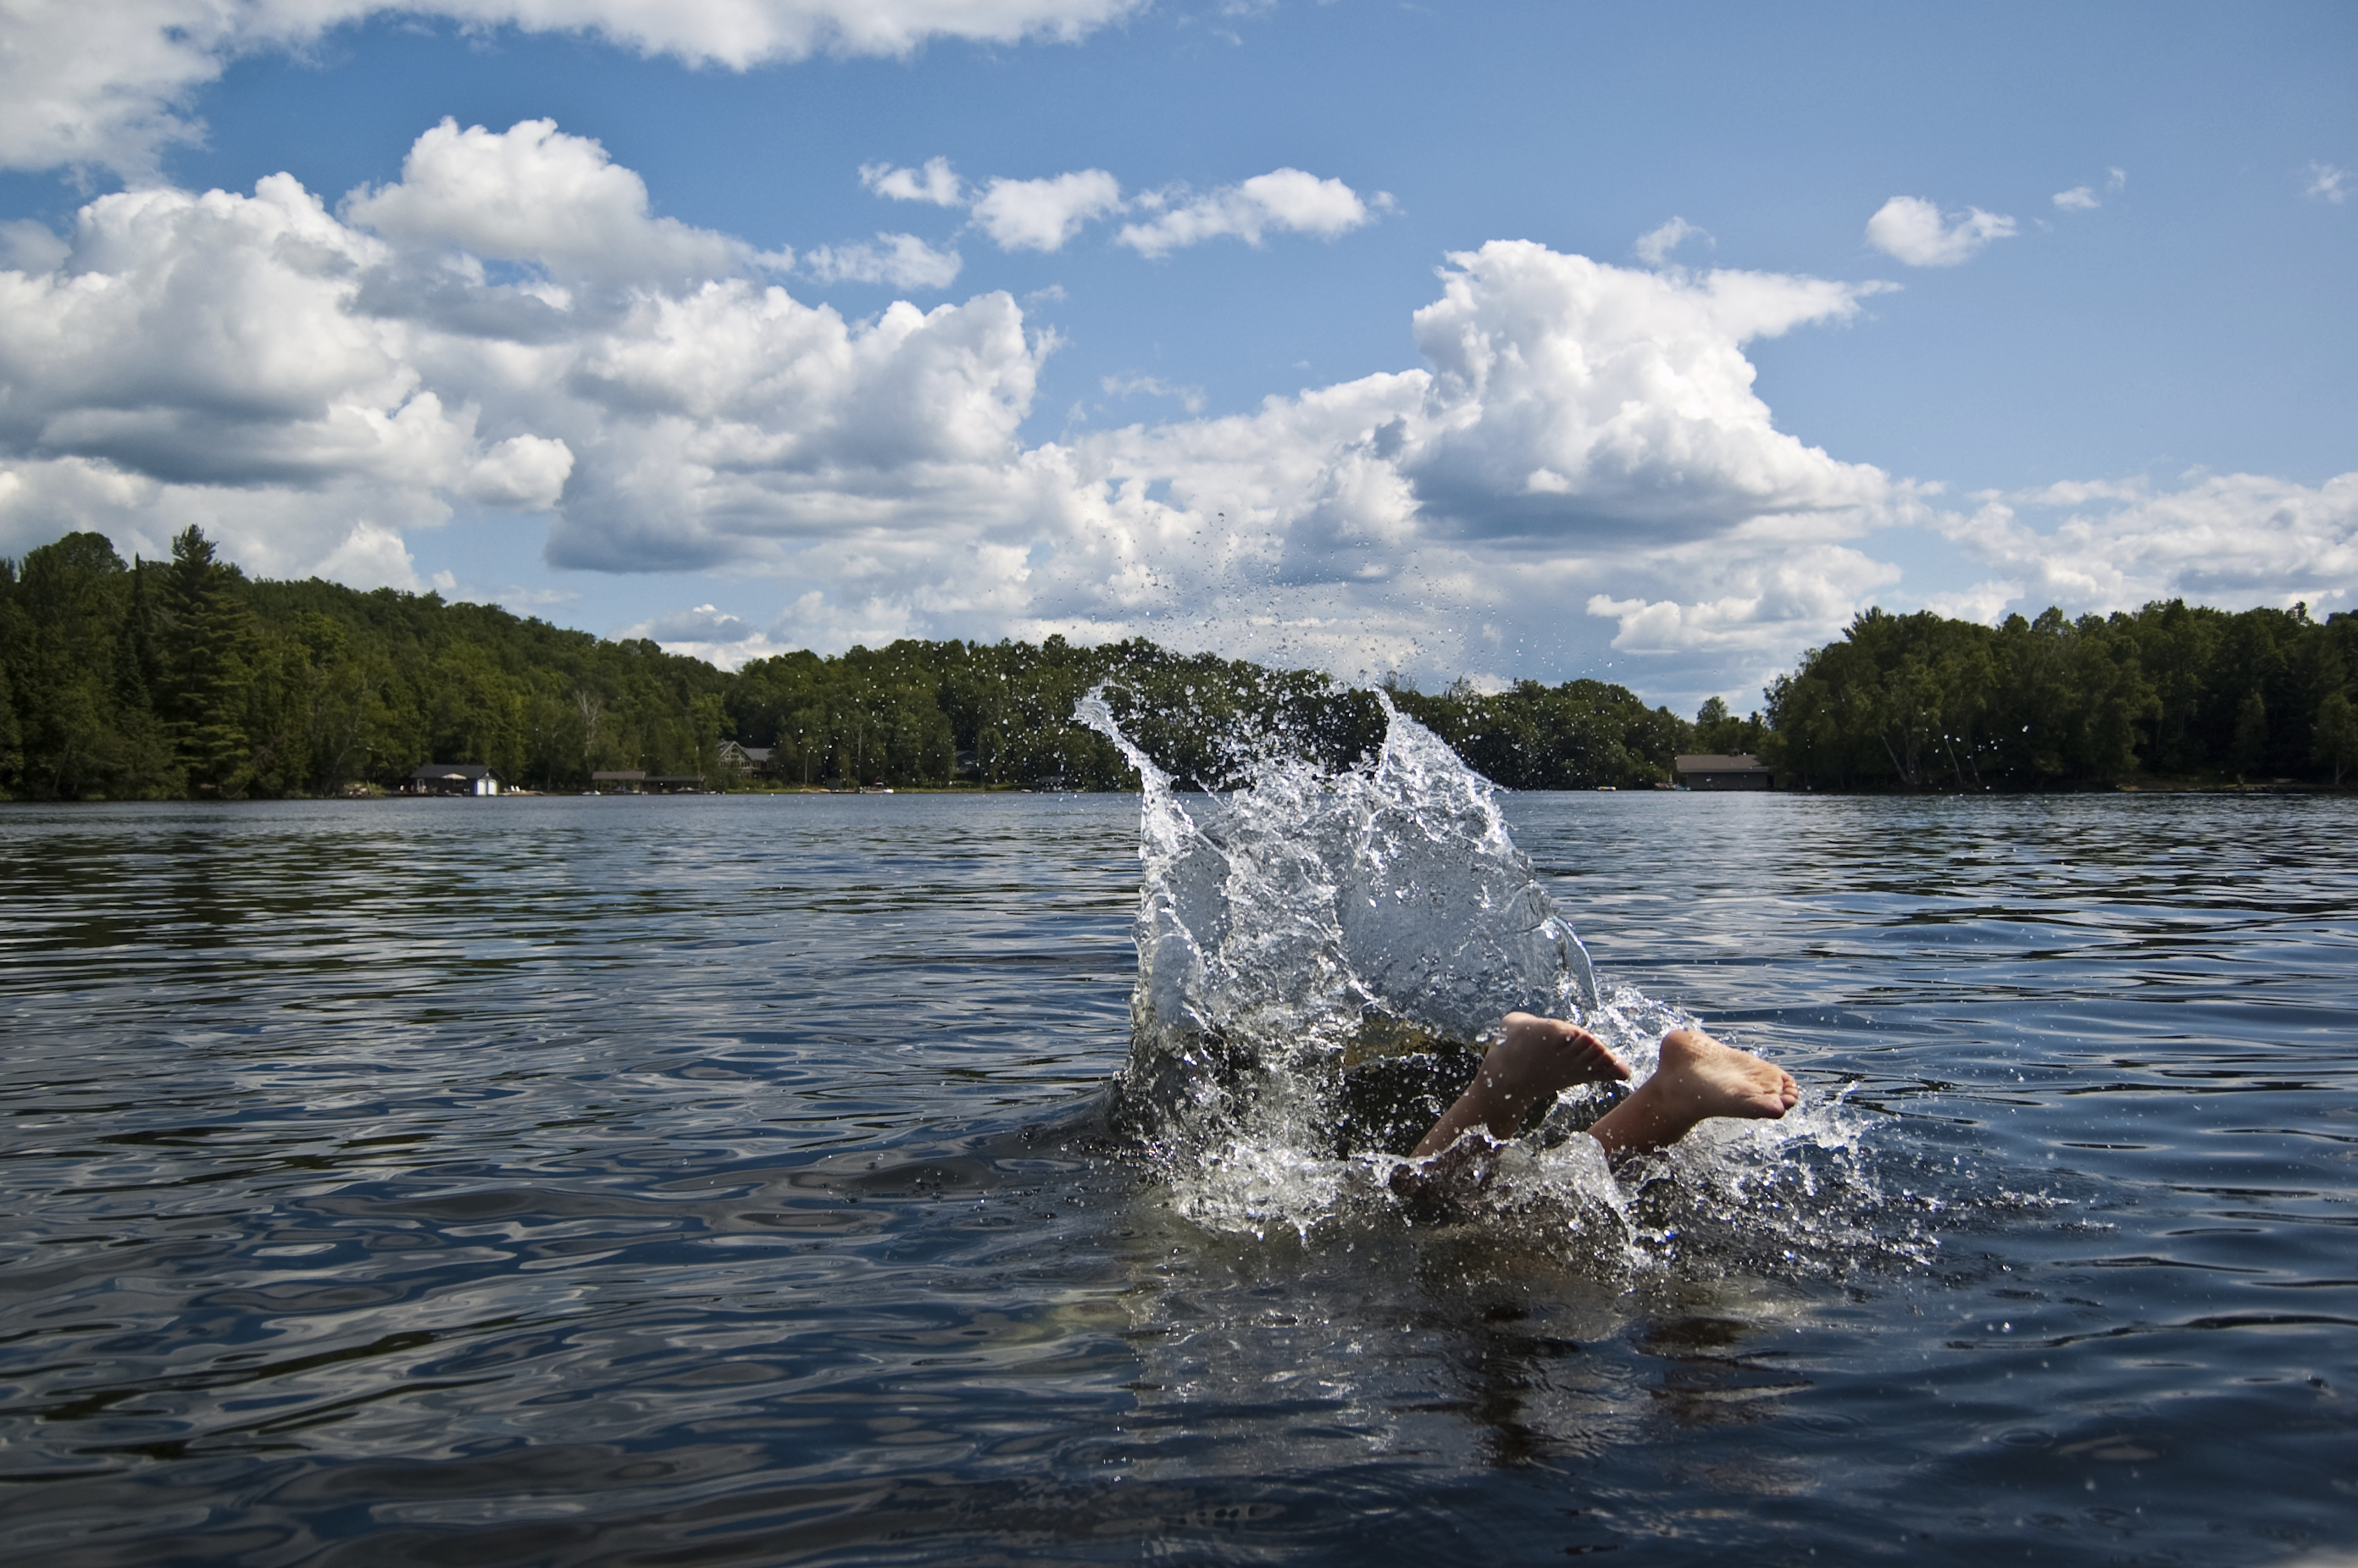 Summer swimming hazard: Norovirus lurked in lake - CBS News